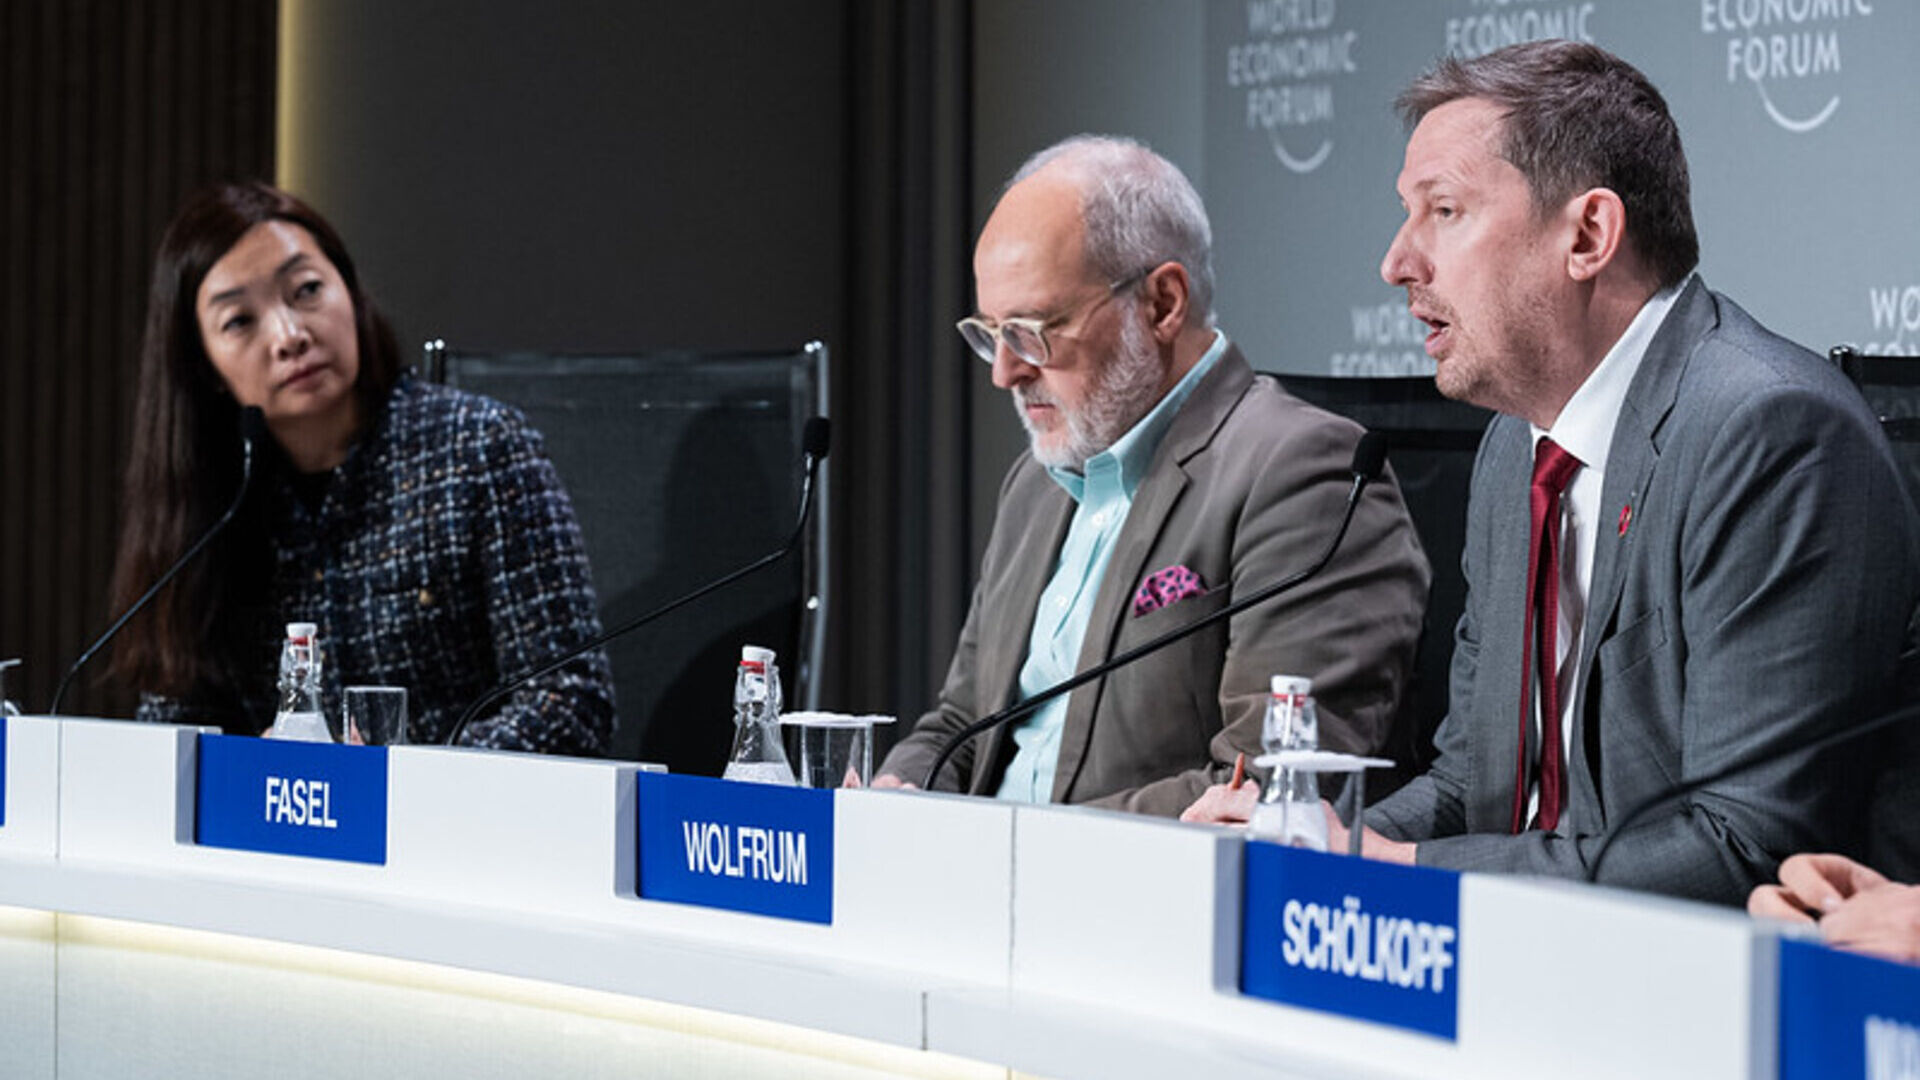 Mạng lưới AI và Điện toán Quốc tế: cuộc họp báo trình bày ICAIN trong phiên bản 2024 của Diễn đàn Kinh tế Thế giới ở Davos (Bang Grisons)